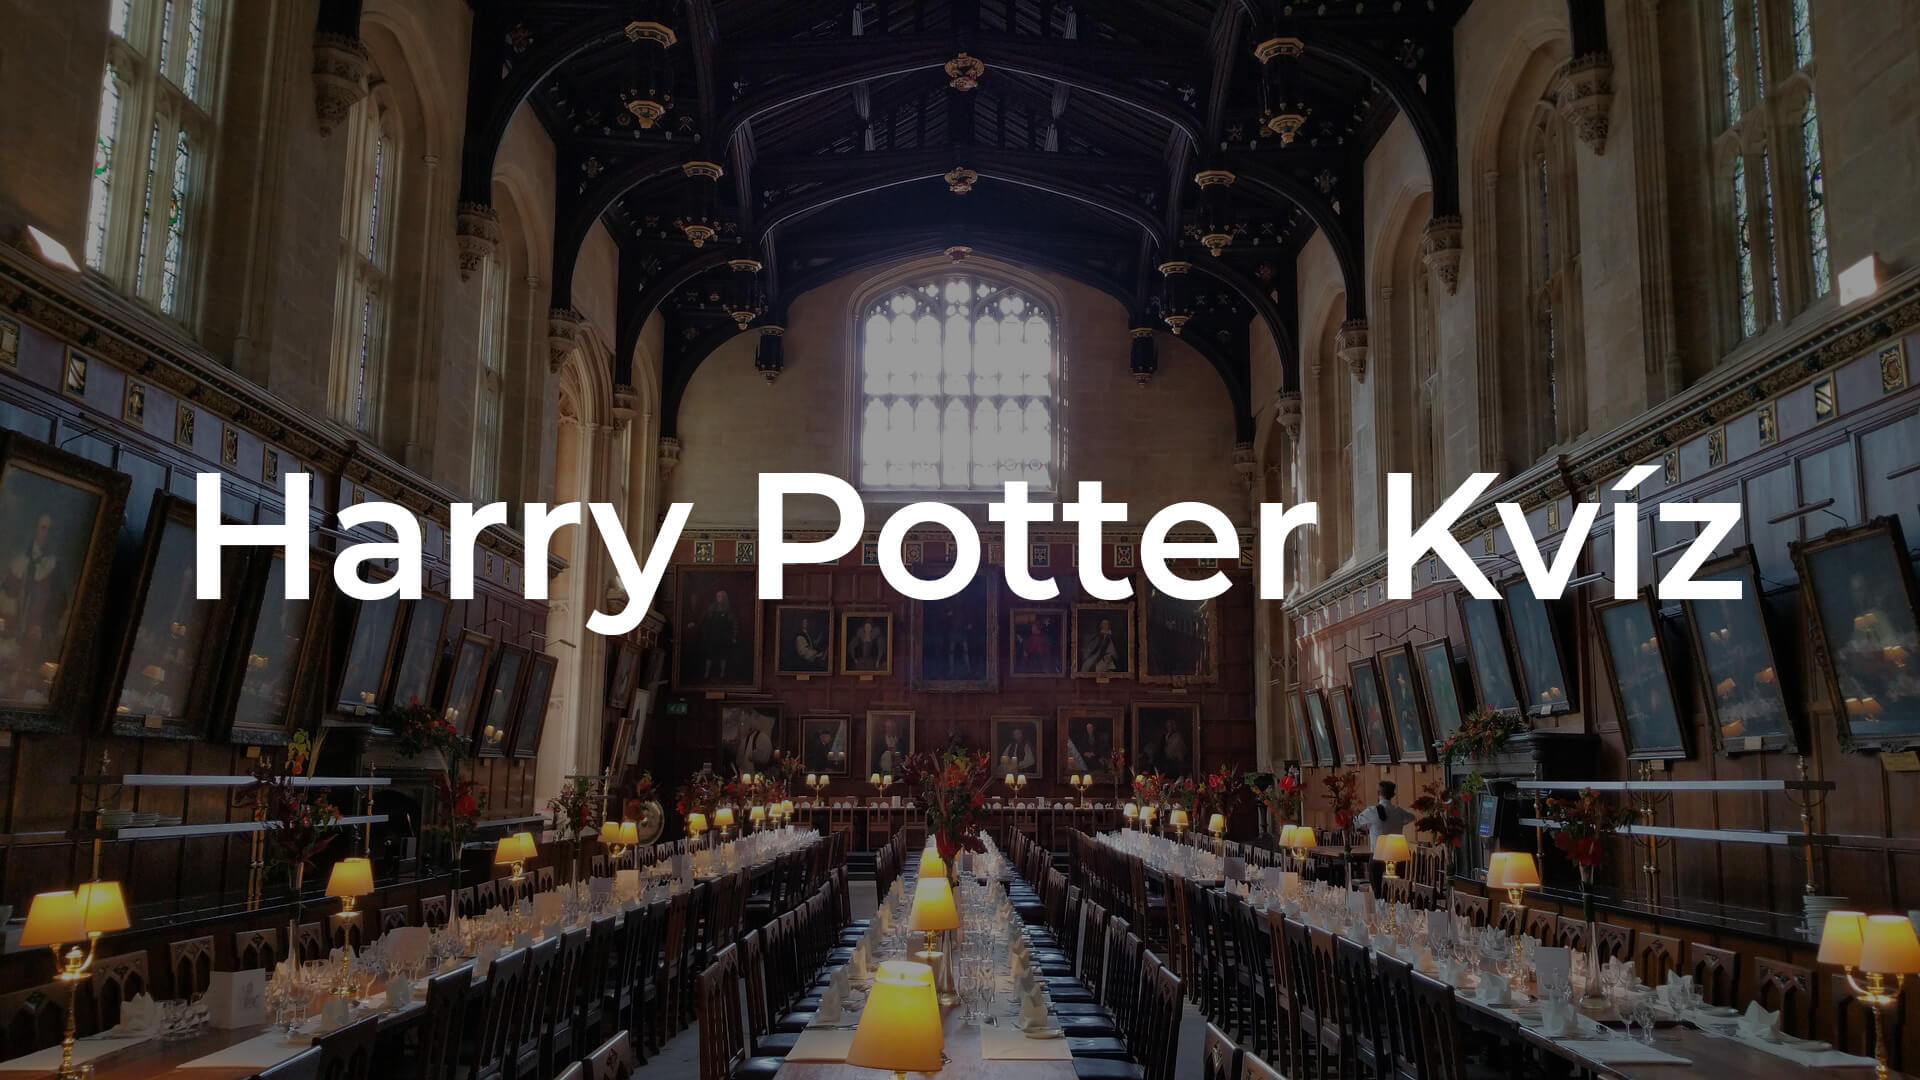 Mennyit tudsz a roxforti tanárokról? – Harry Potter kvíz